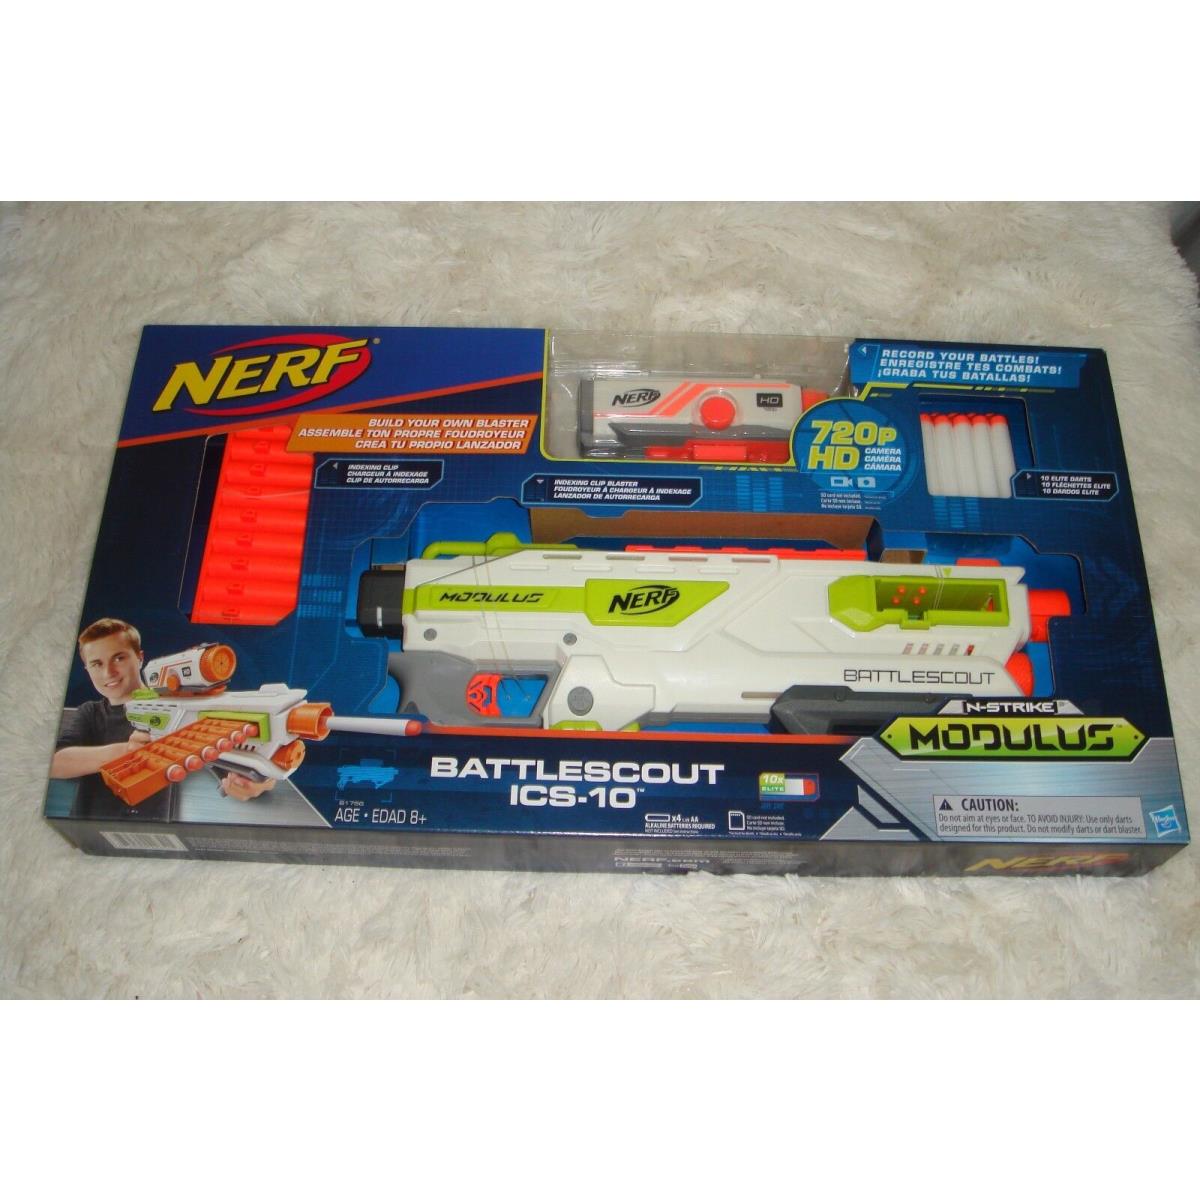 Nerf-n-strike Modulus Battle Scout ICS-10 HD Camera Blaster Darts Toy Gun B17